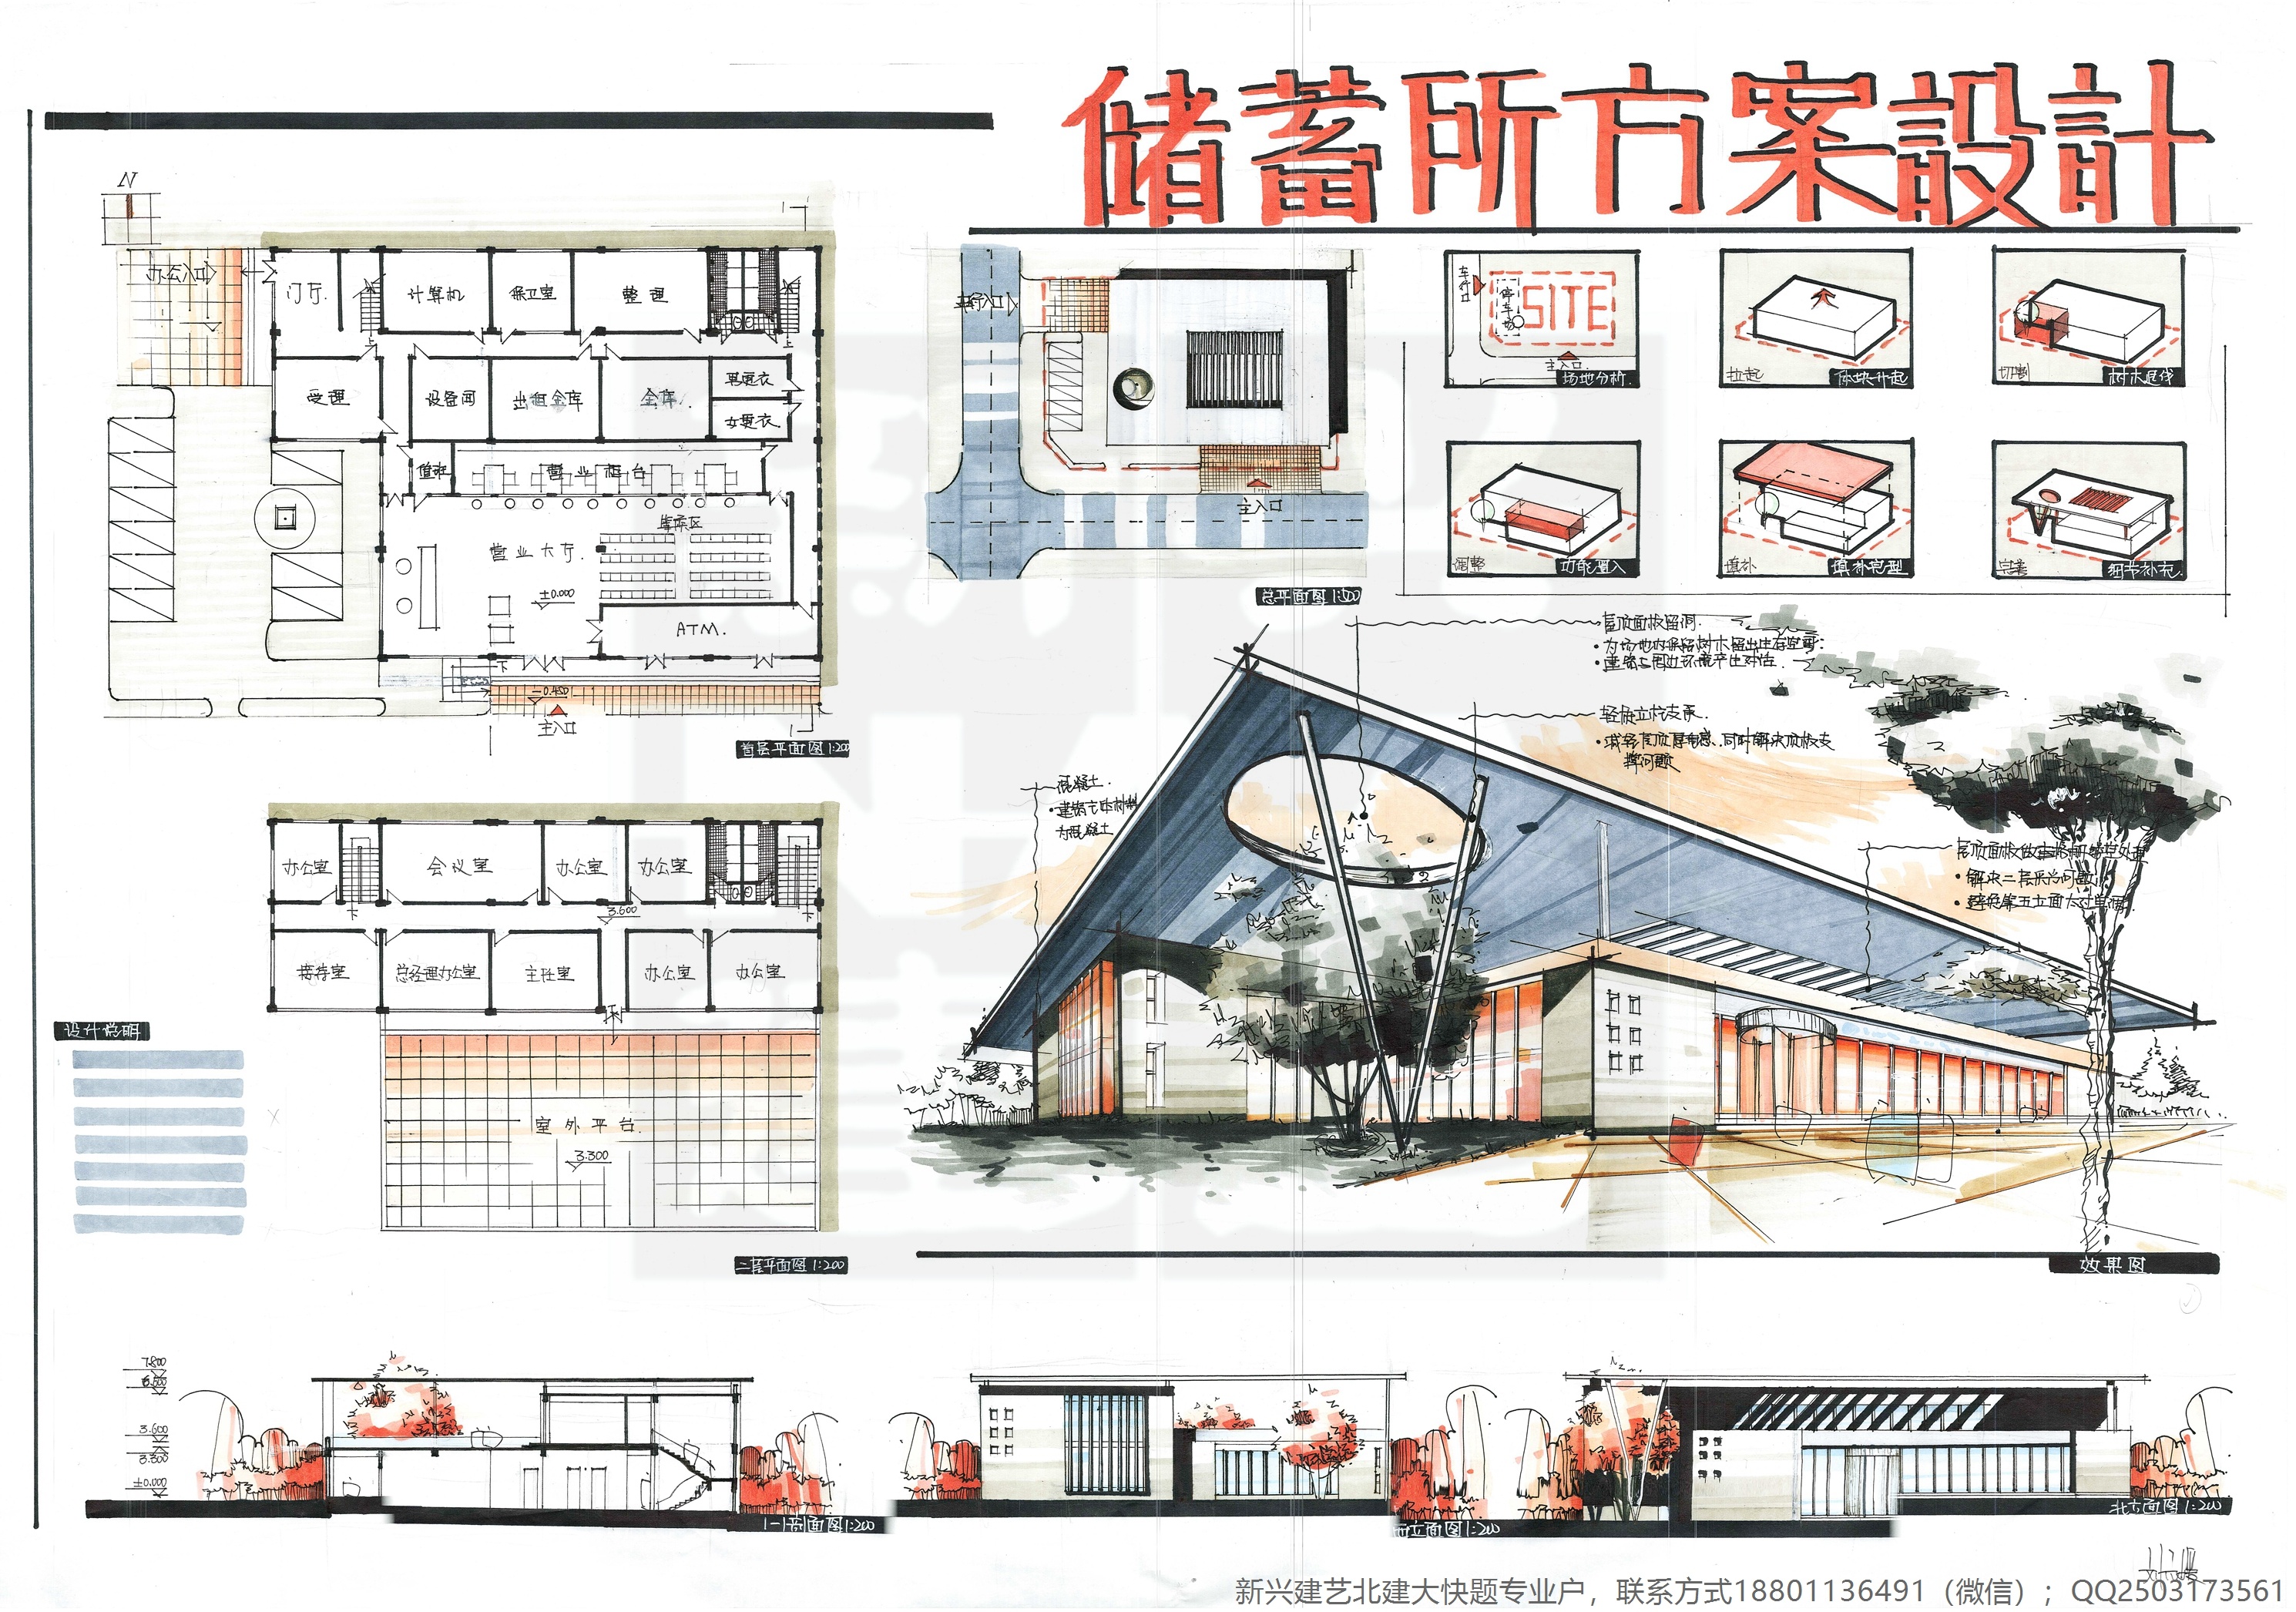 优秀建筑快题素材|空间|建筑设计|北京新兴建艺